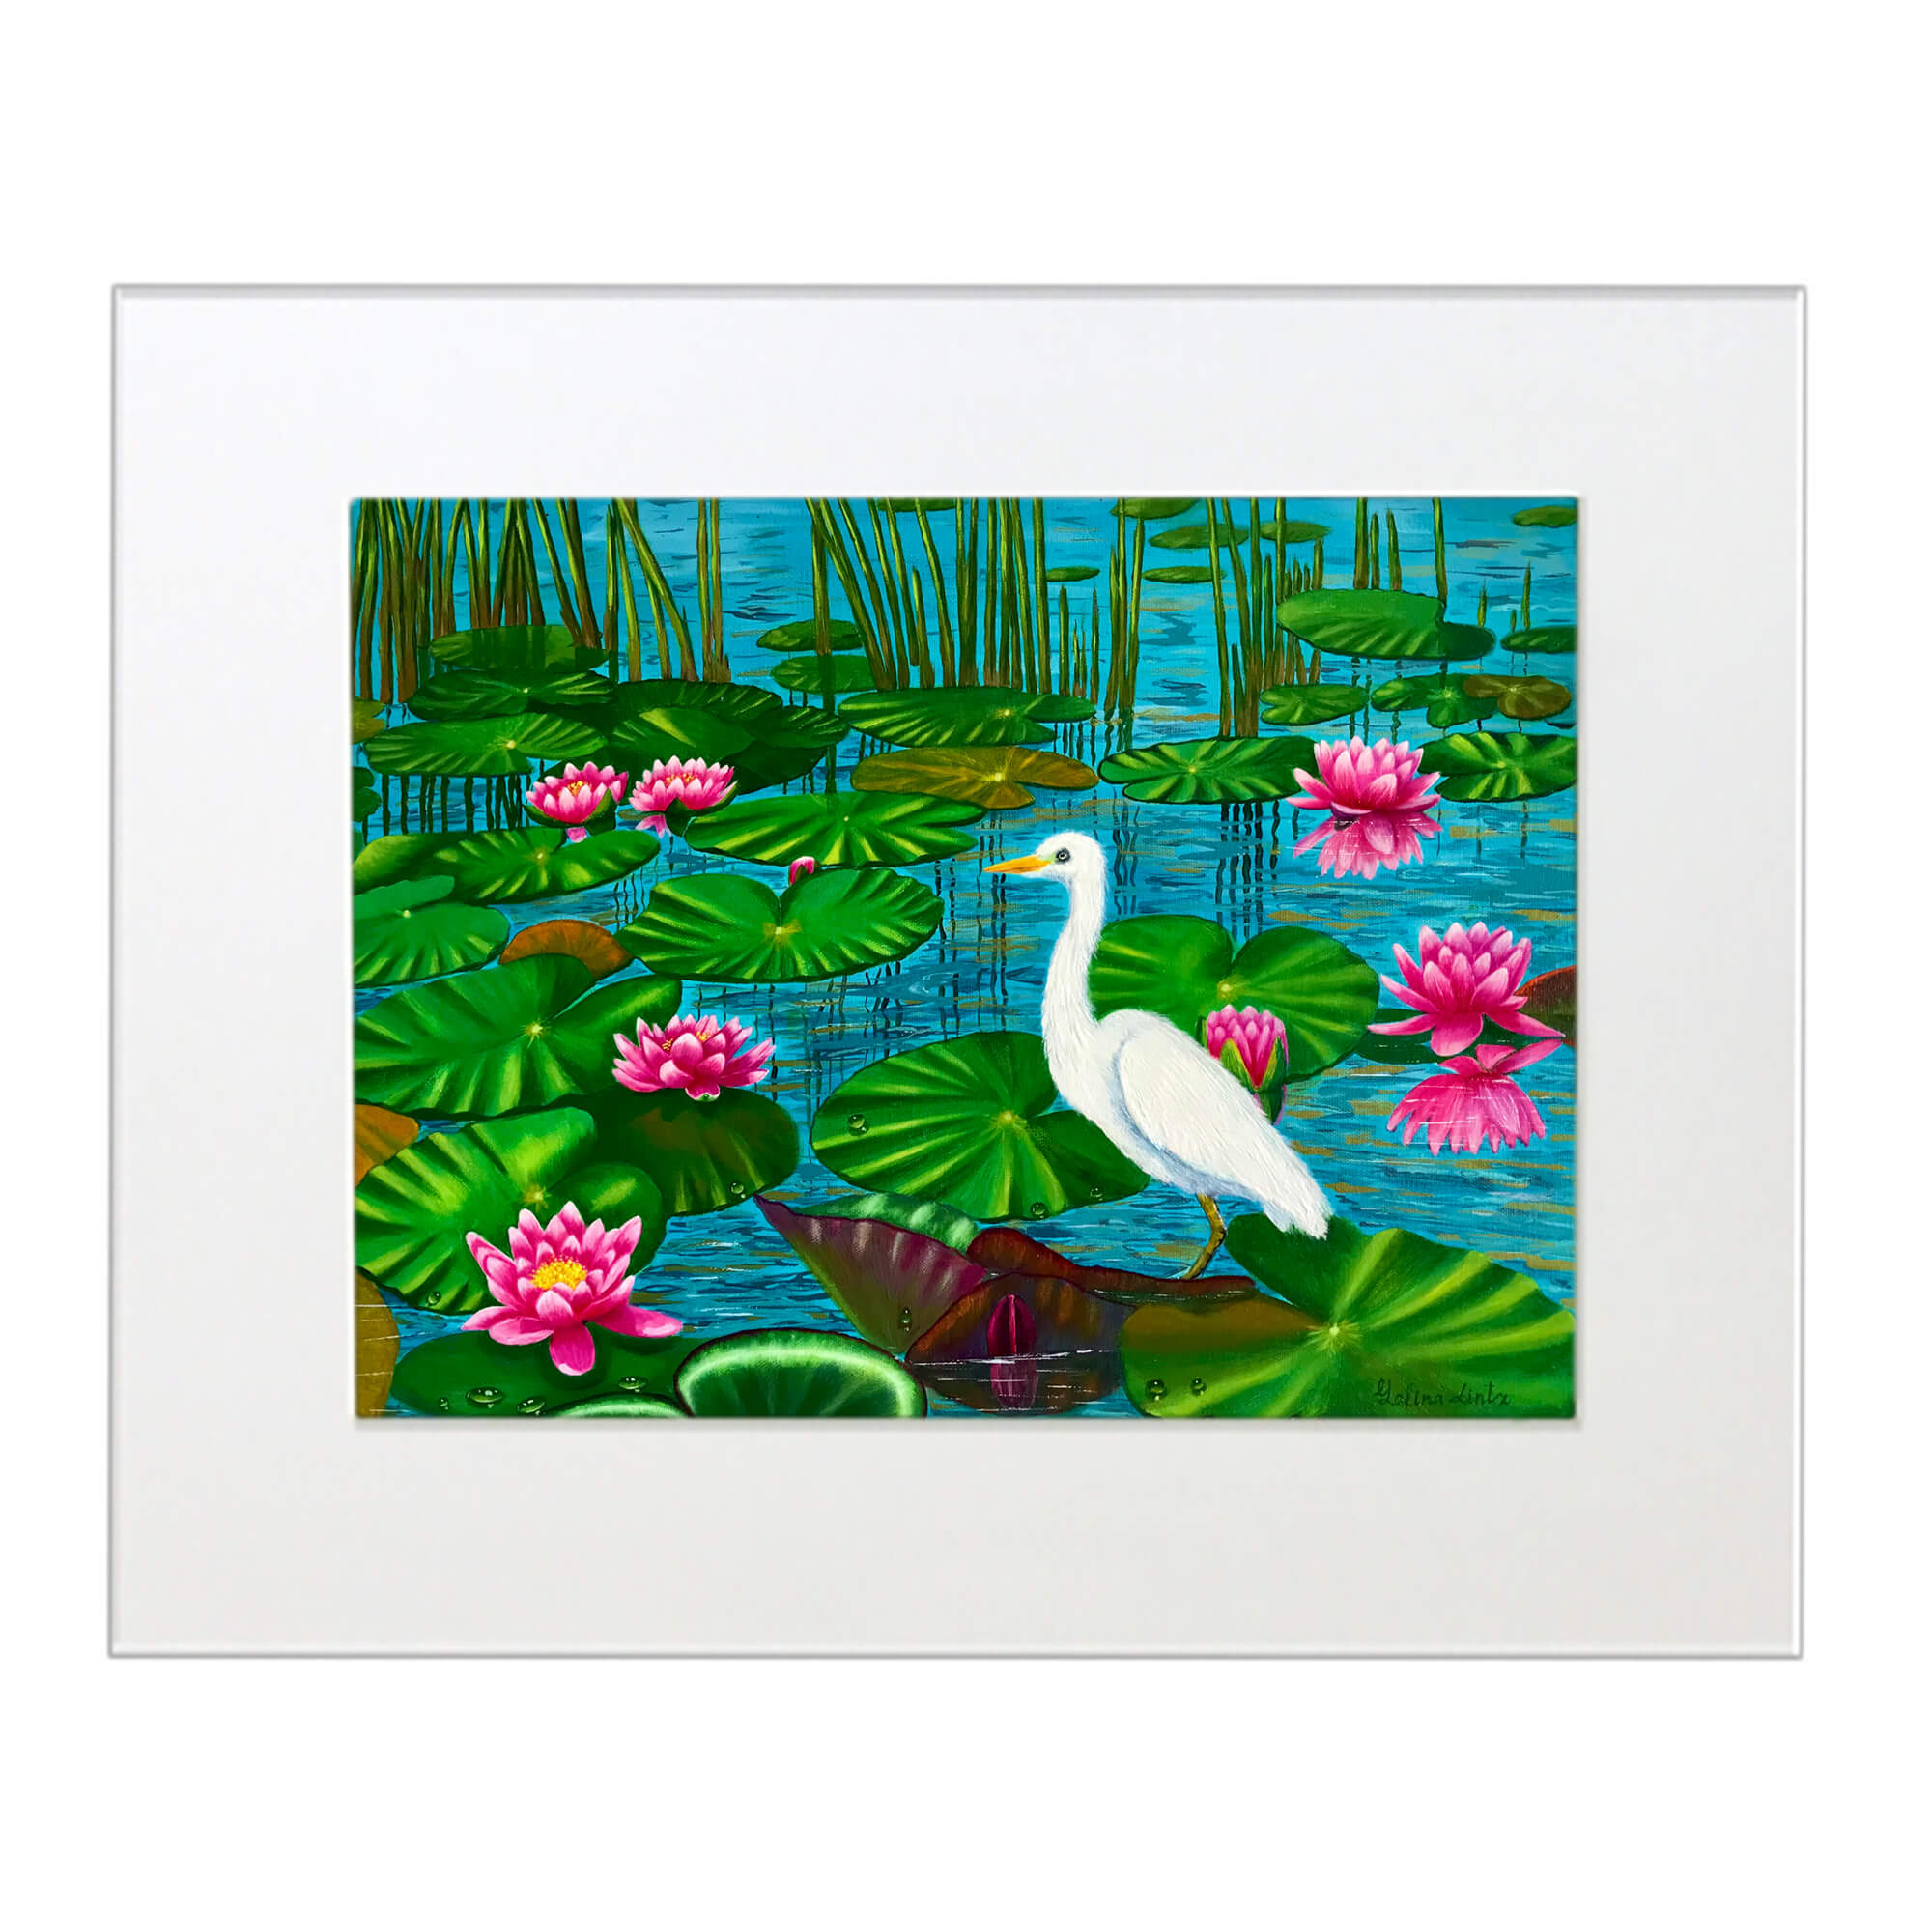 Matted art print featuring water lilies by hawaii artist Galina Lintz